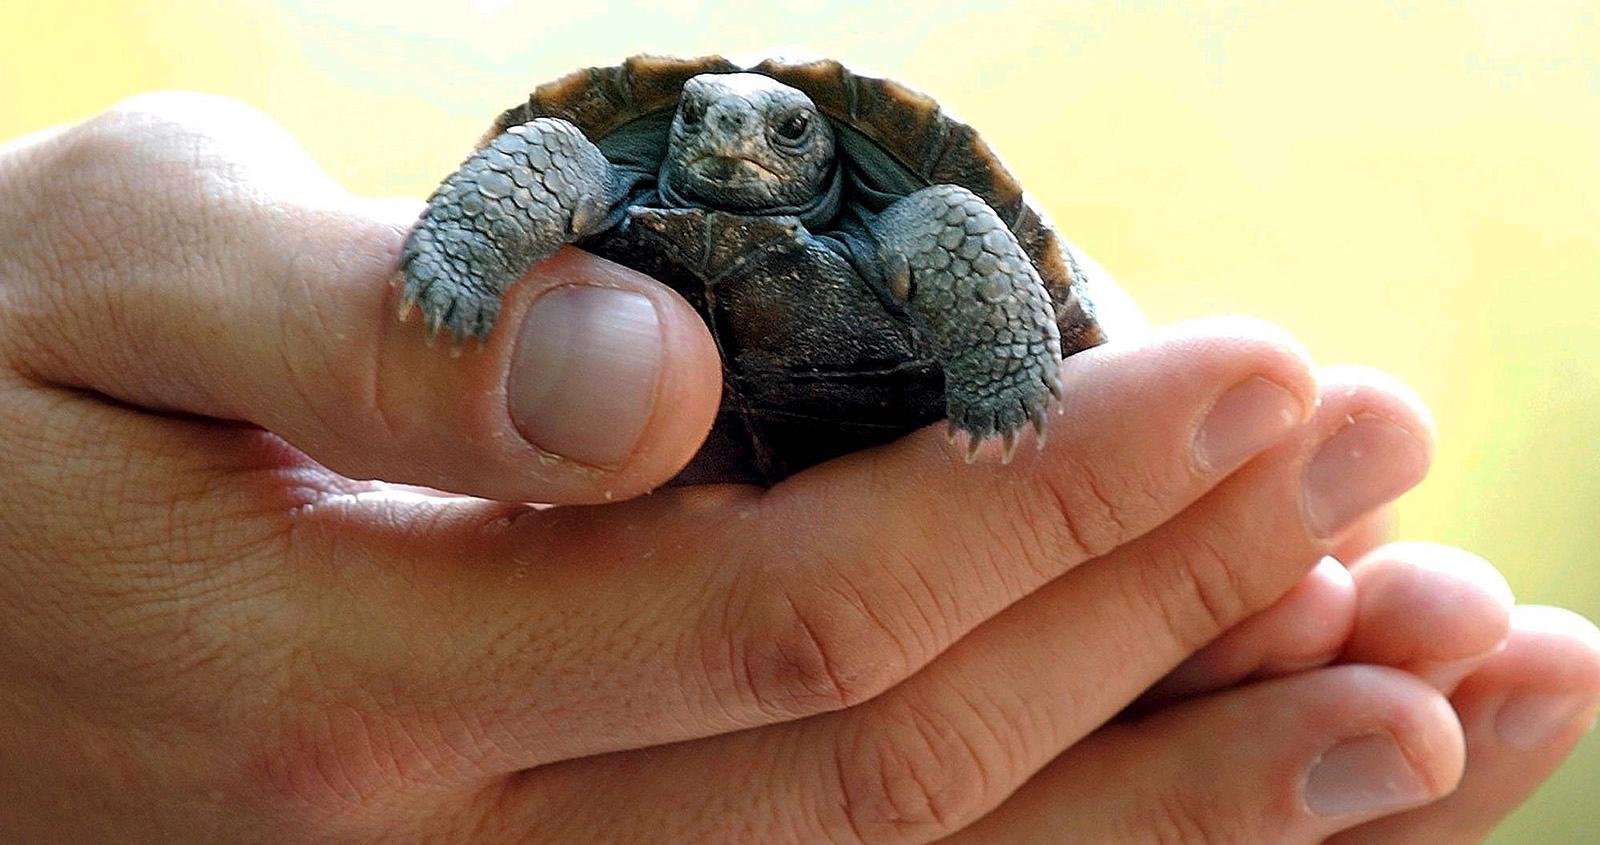 Den här galapagossköldpaddan har inte med den aktuella händelsen att göra.